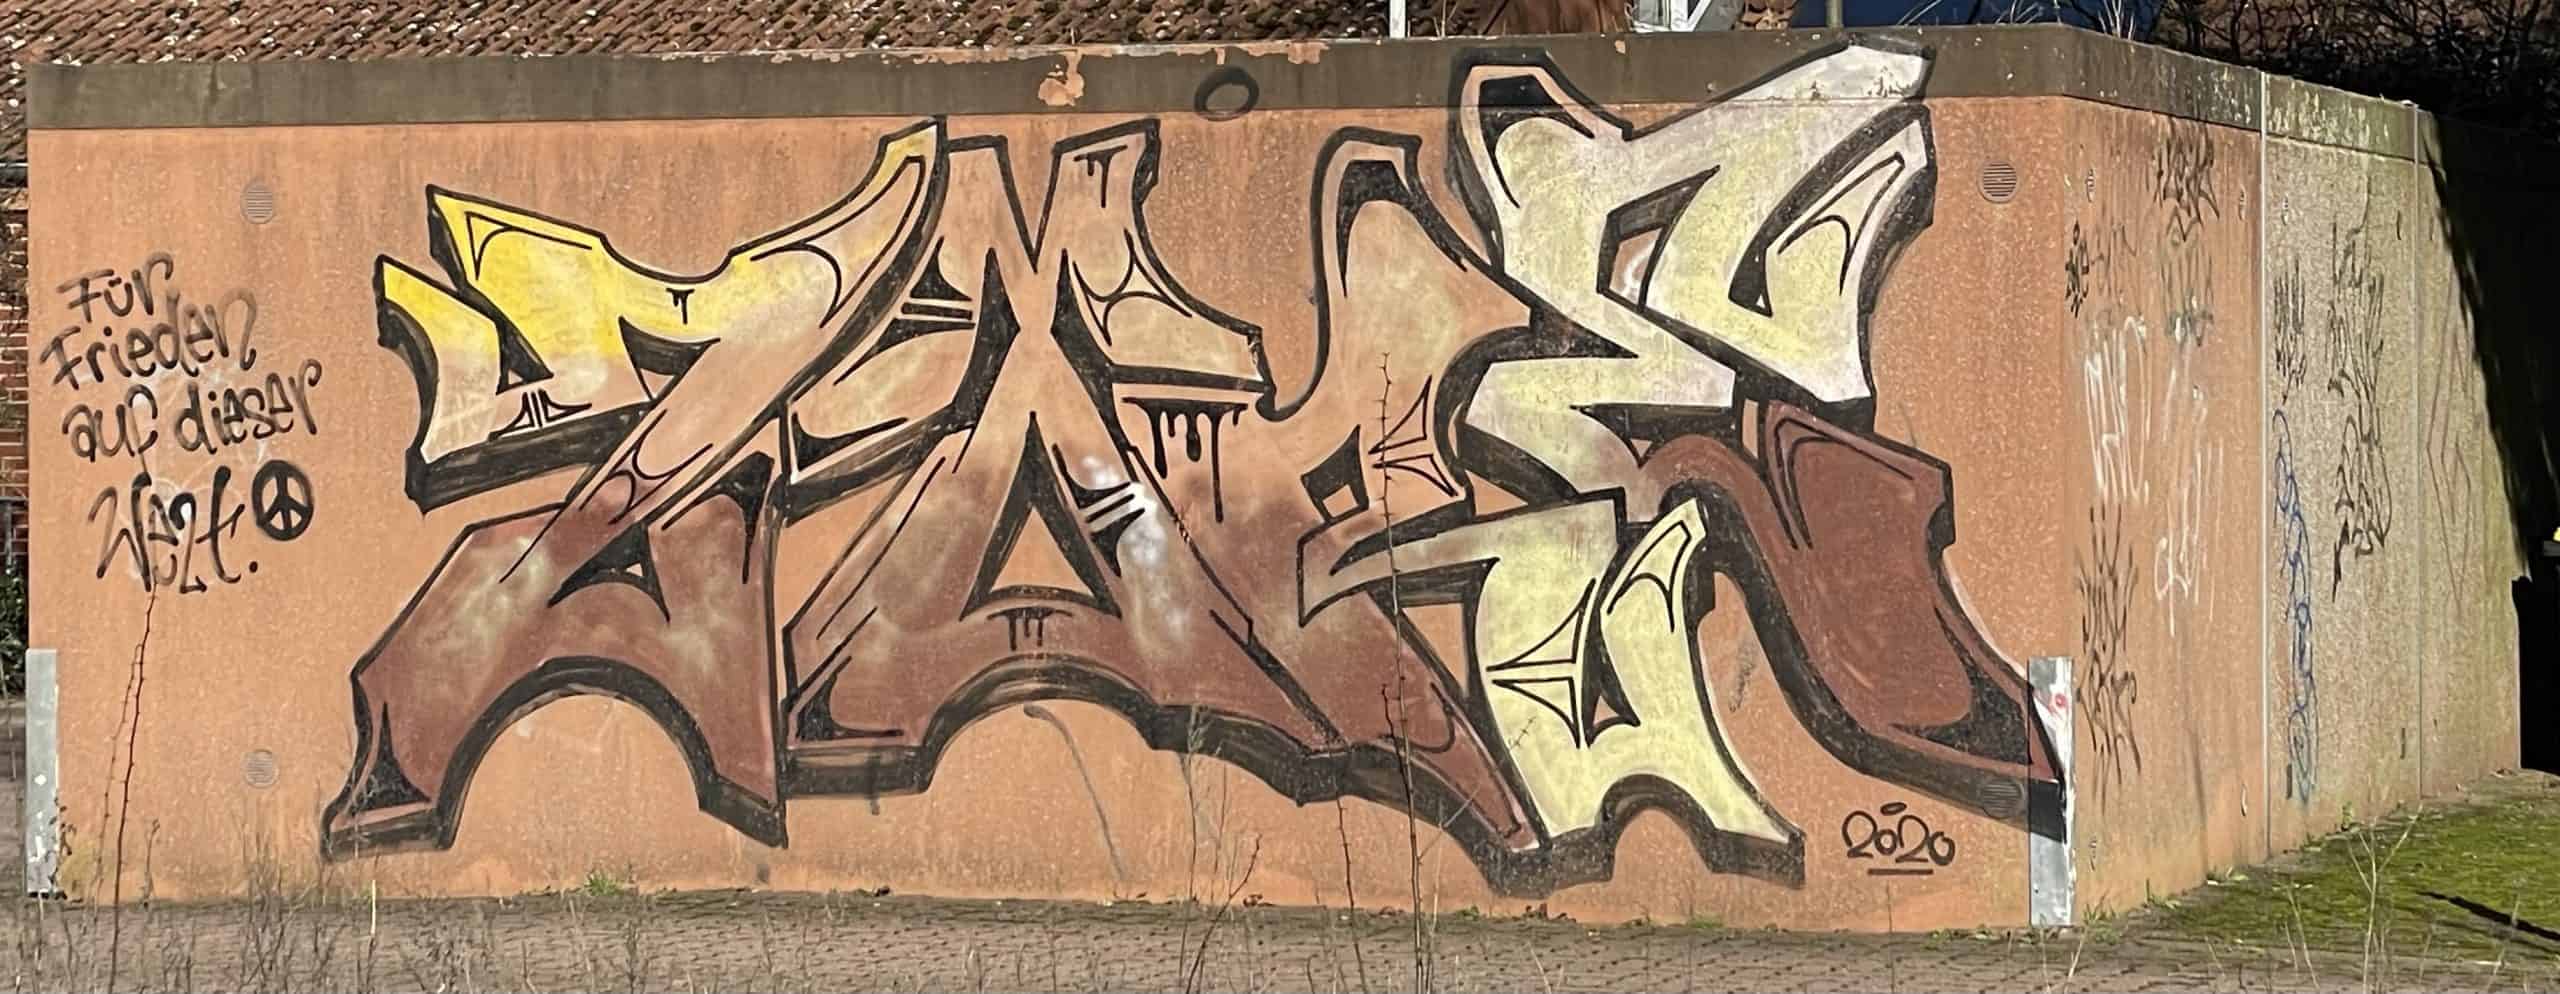 Graffiti auf Garagenwand